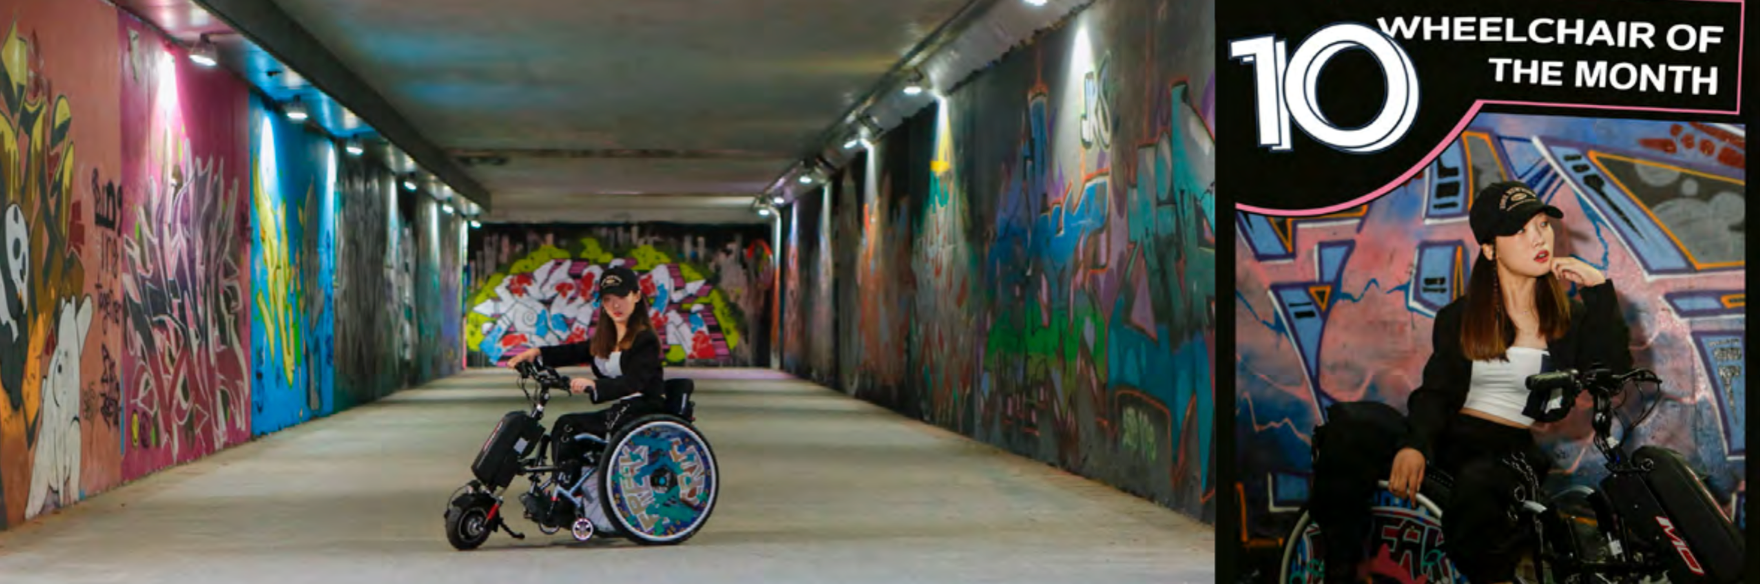 스트릿 우먼 파이터> 컨셉으로 연출한 ‘이달의 휠체어’ 프로젝트 이미지